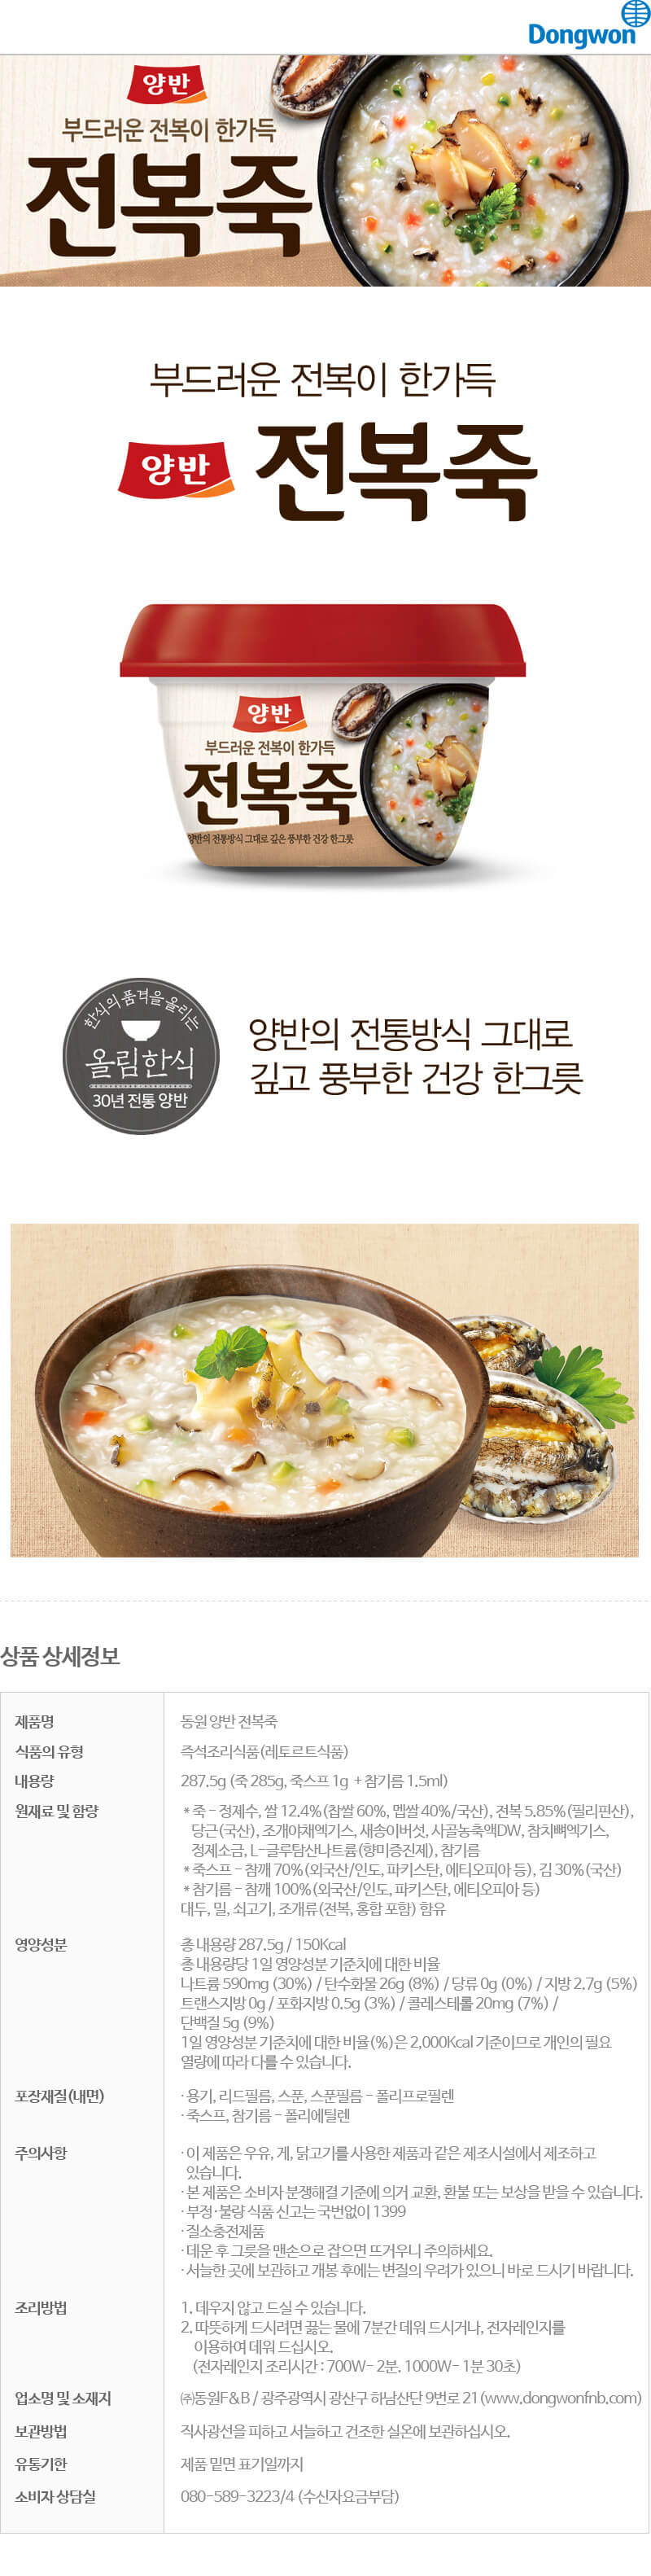 韓國食品-[東遠] 兩班 鮑魚粥 287.5g